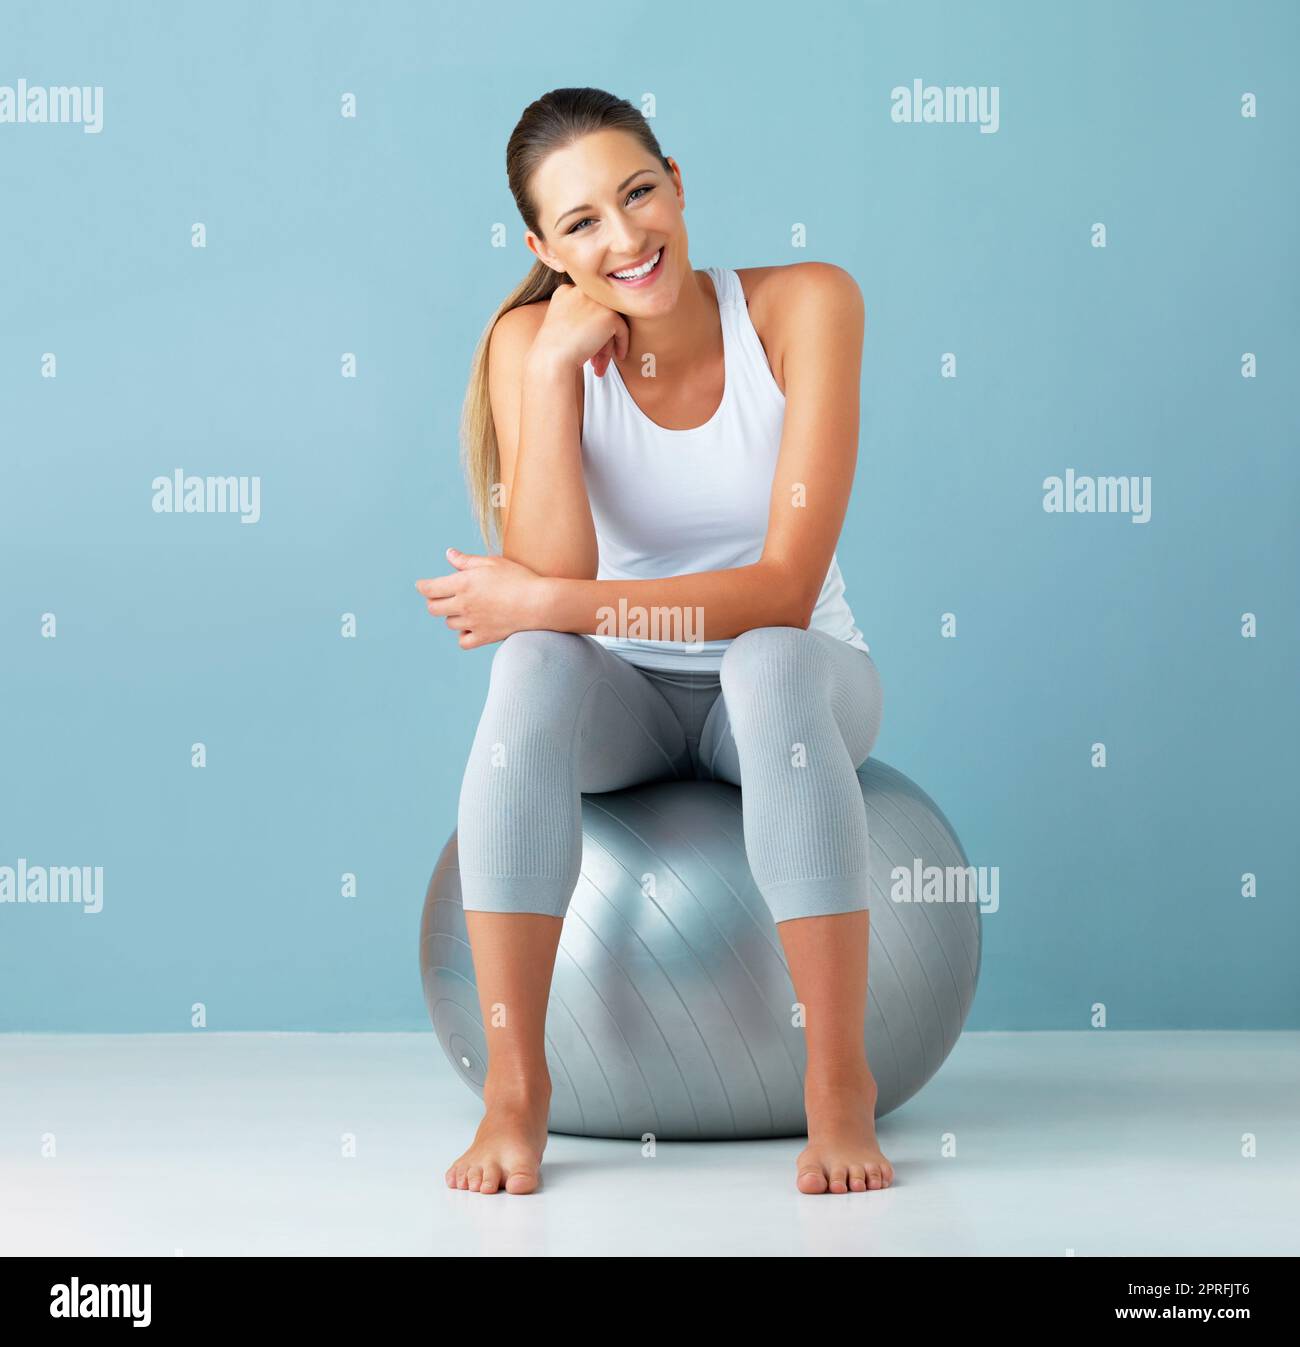 Dieser Ball begleitet mich zu jedem Workout. Studioportrait einer gesunden jungen Frau, die auf einem Übungsball vor blauem Hintergrund sitzt. Stockfoto